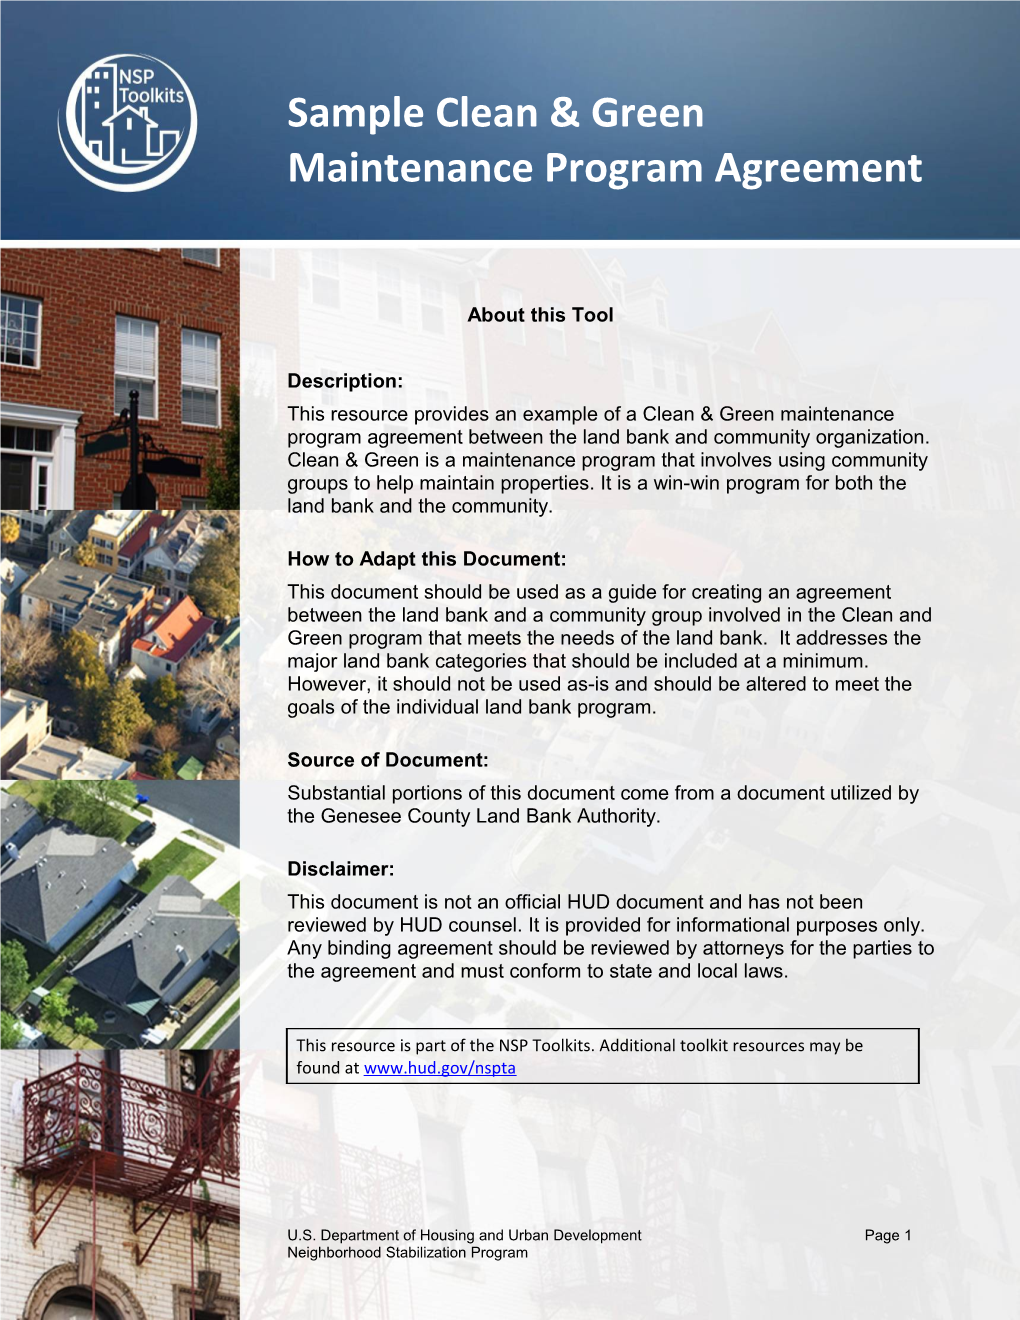 Clean & Green Maintenance Program Agreement